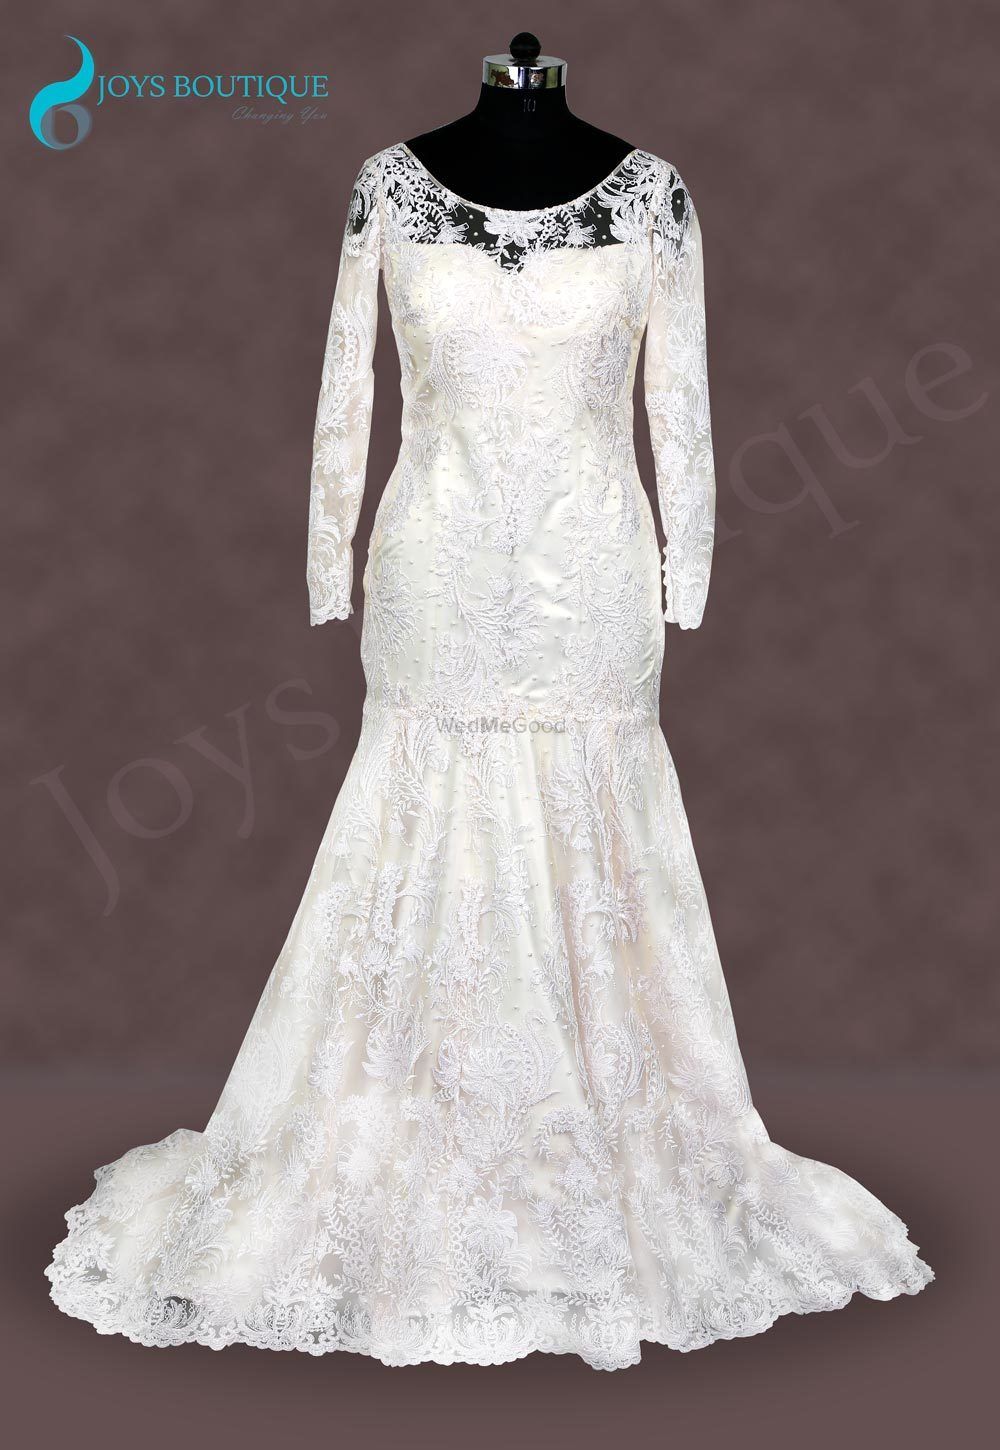 Photo By Joys Boutique - Bridal Wear